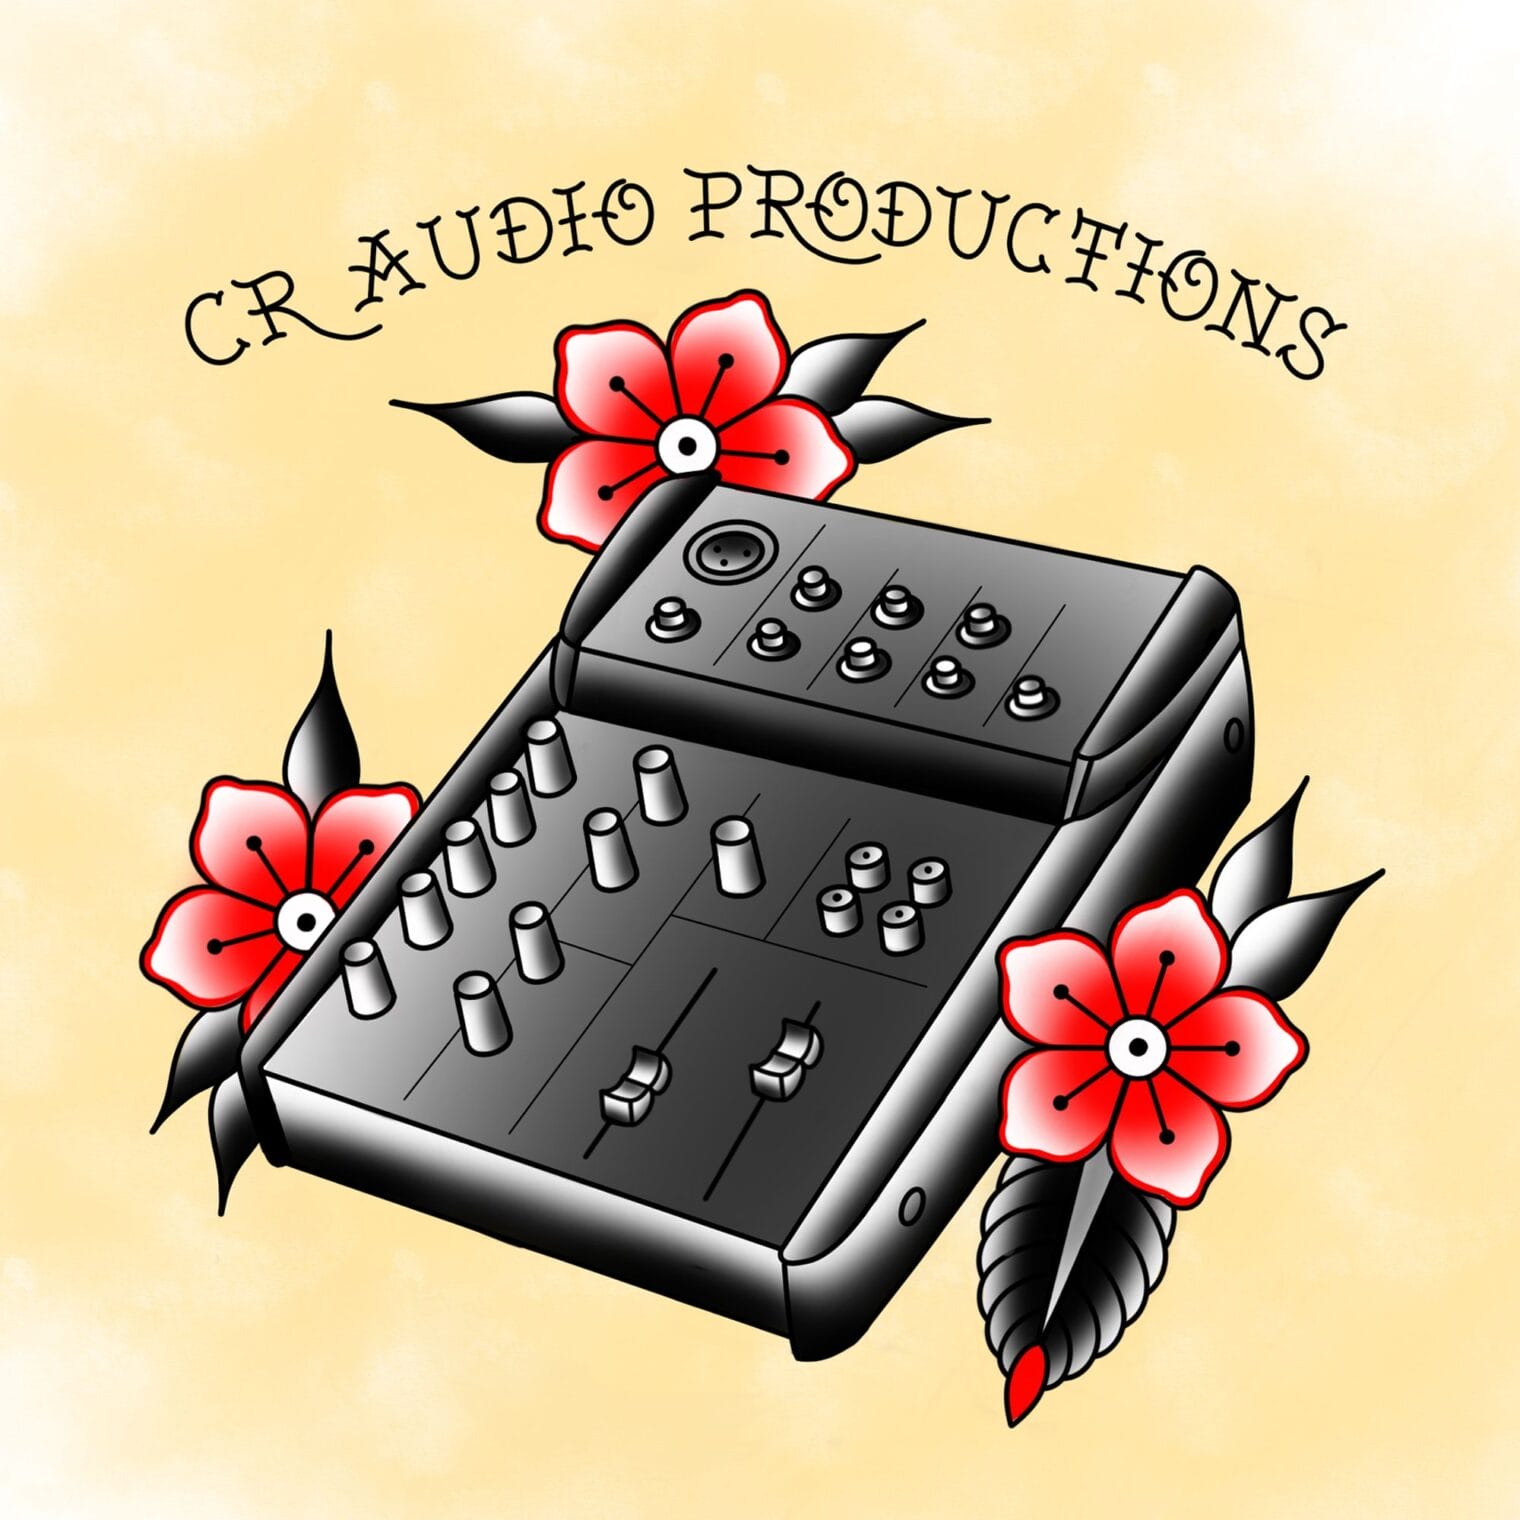 CR Audio Productions Digital Paint